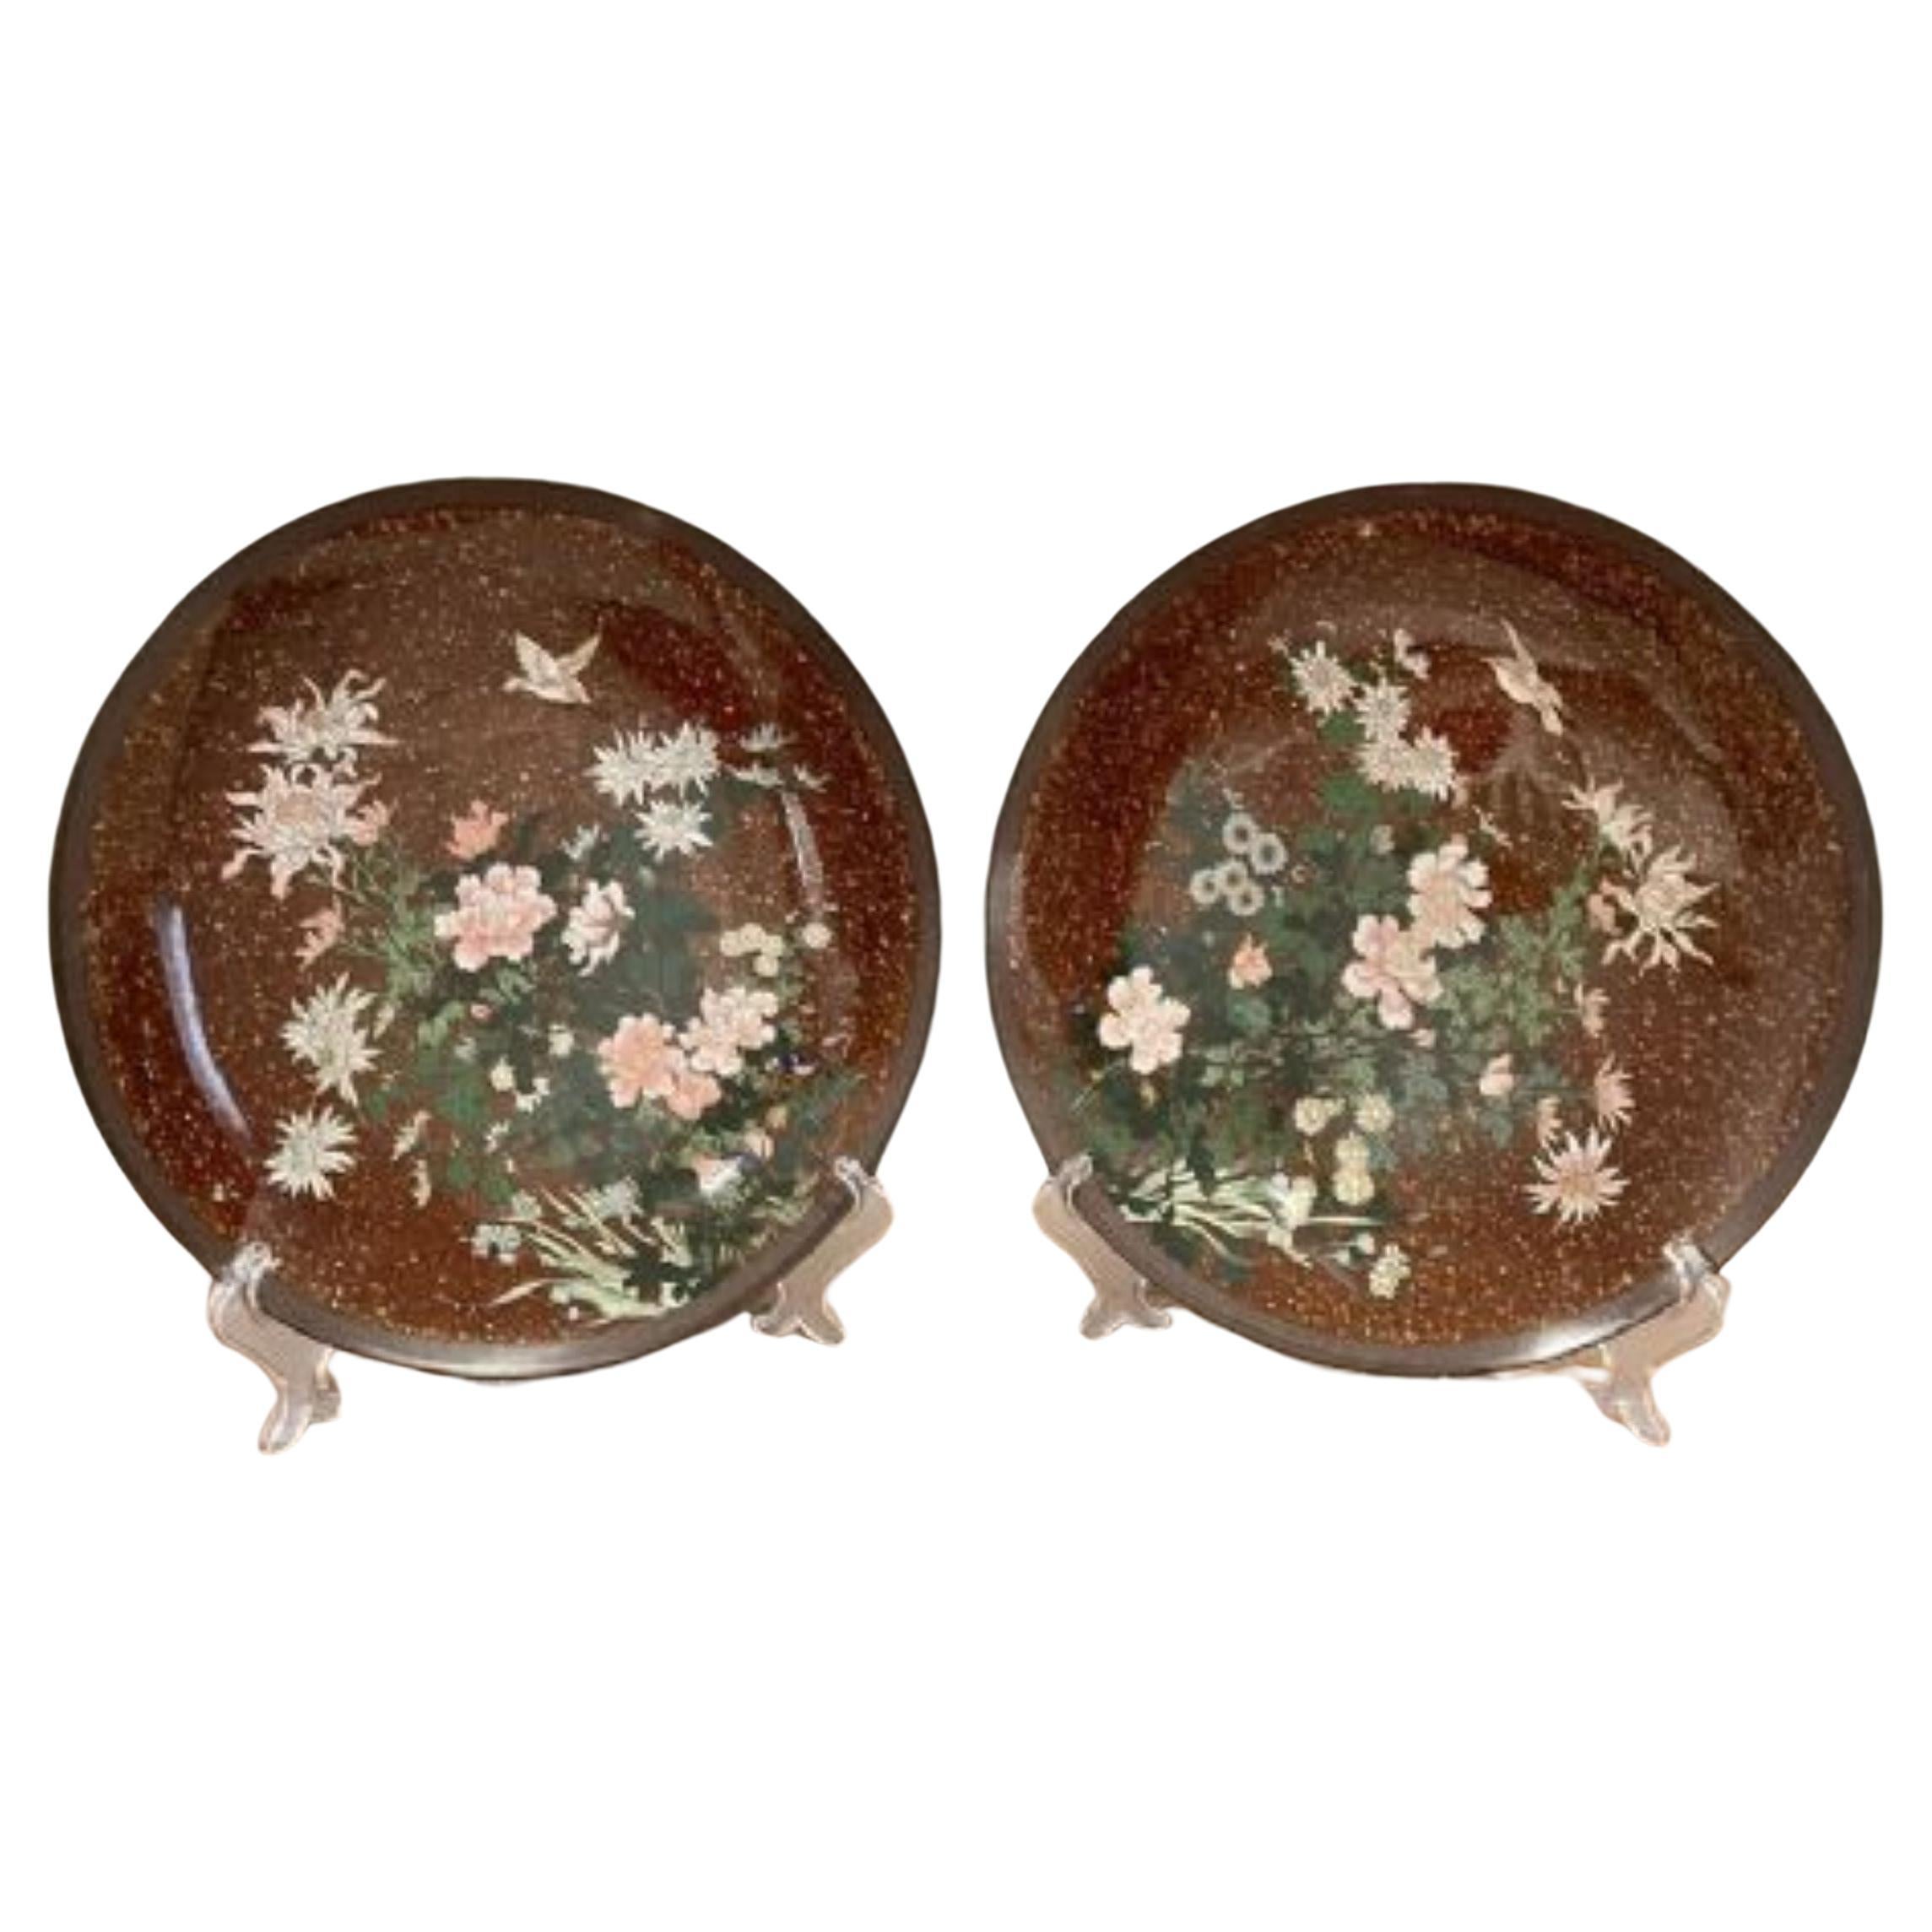 Fine pair of antique Japanese cloisonné plates